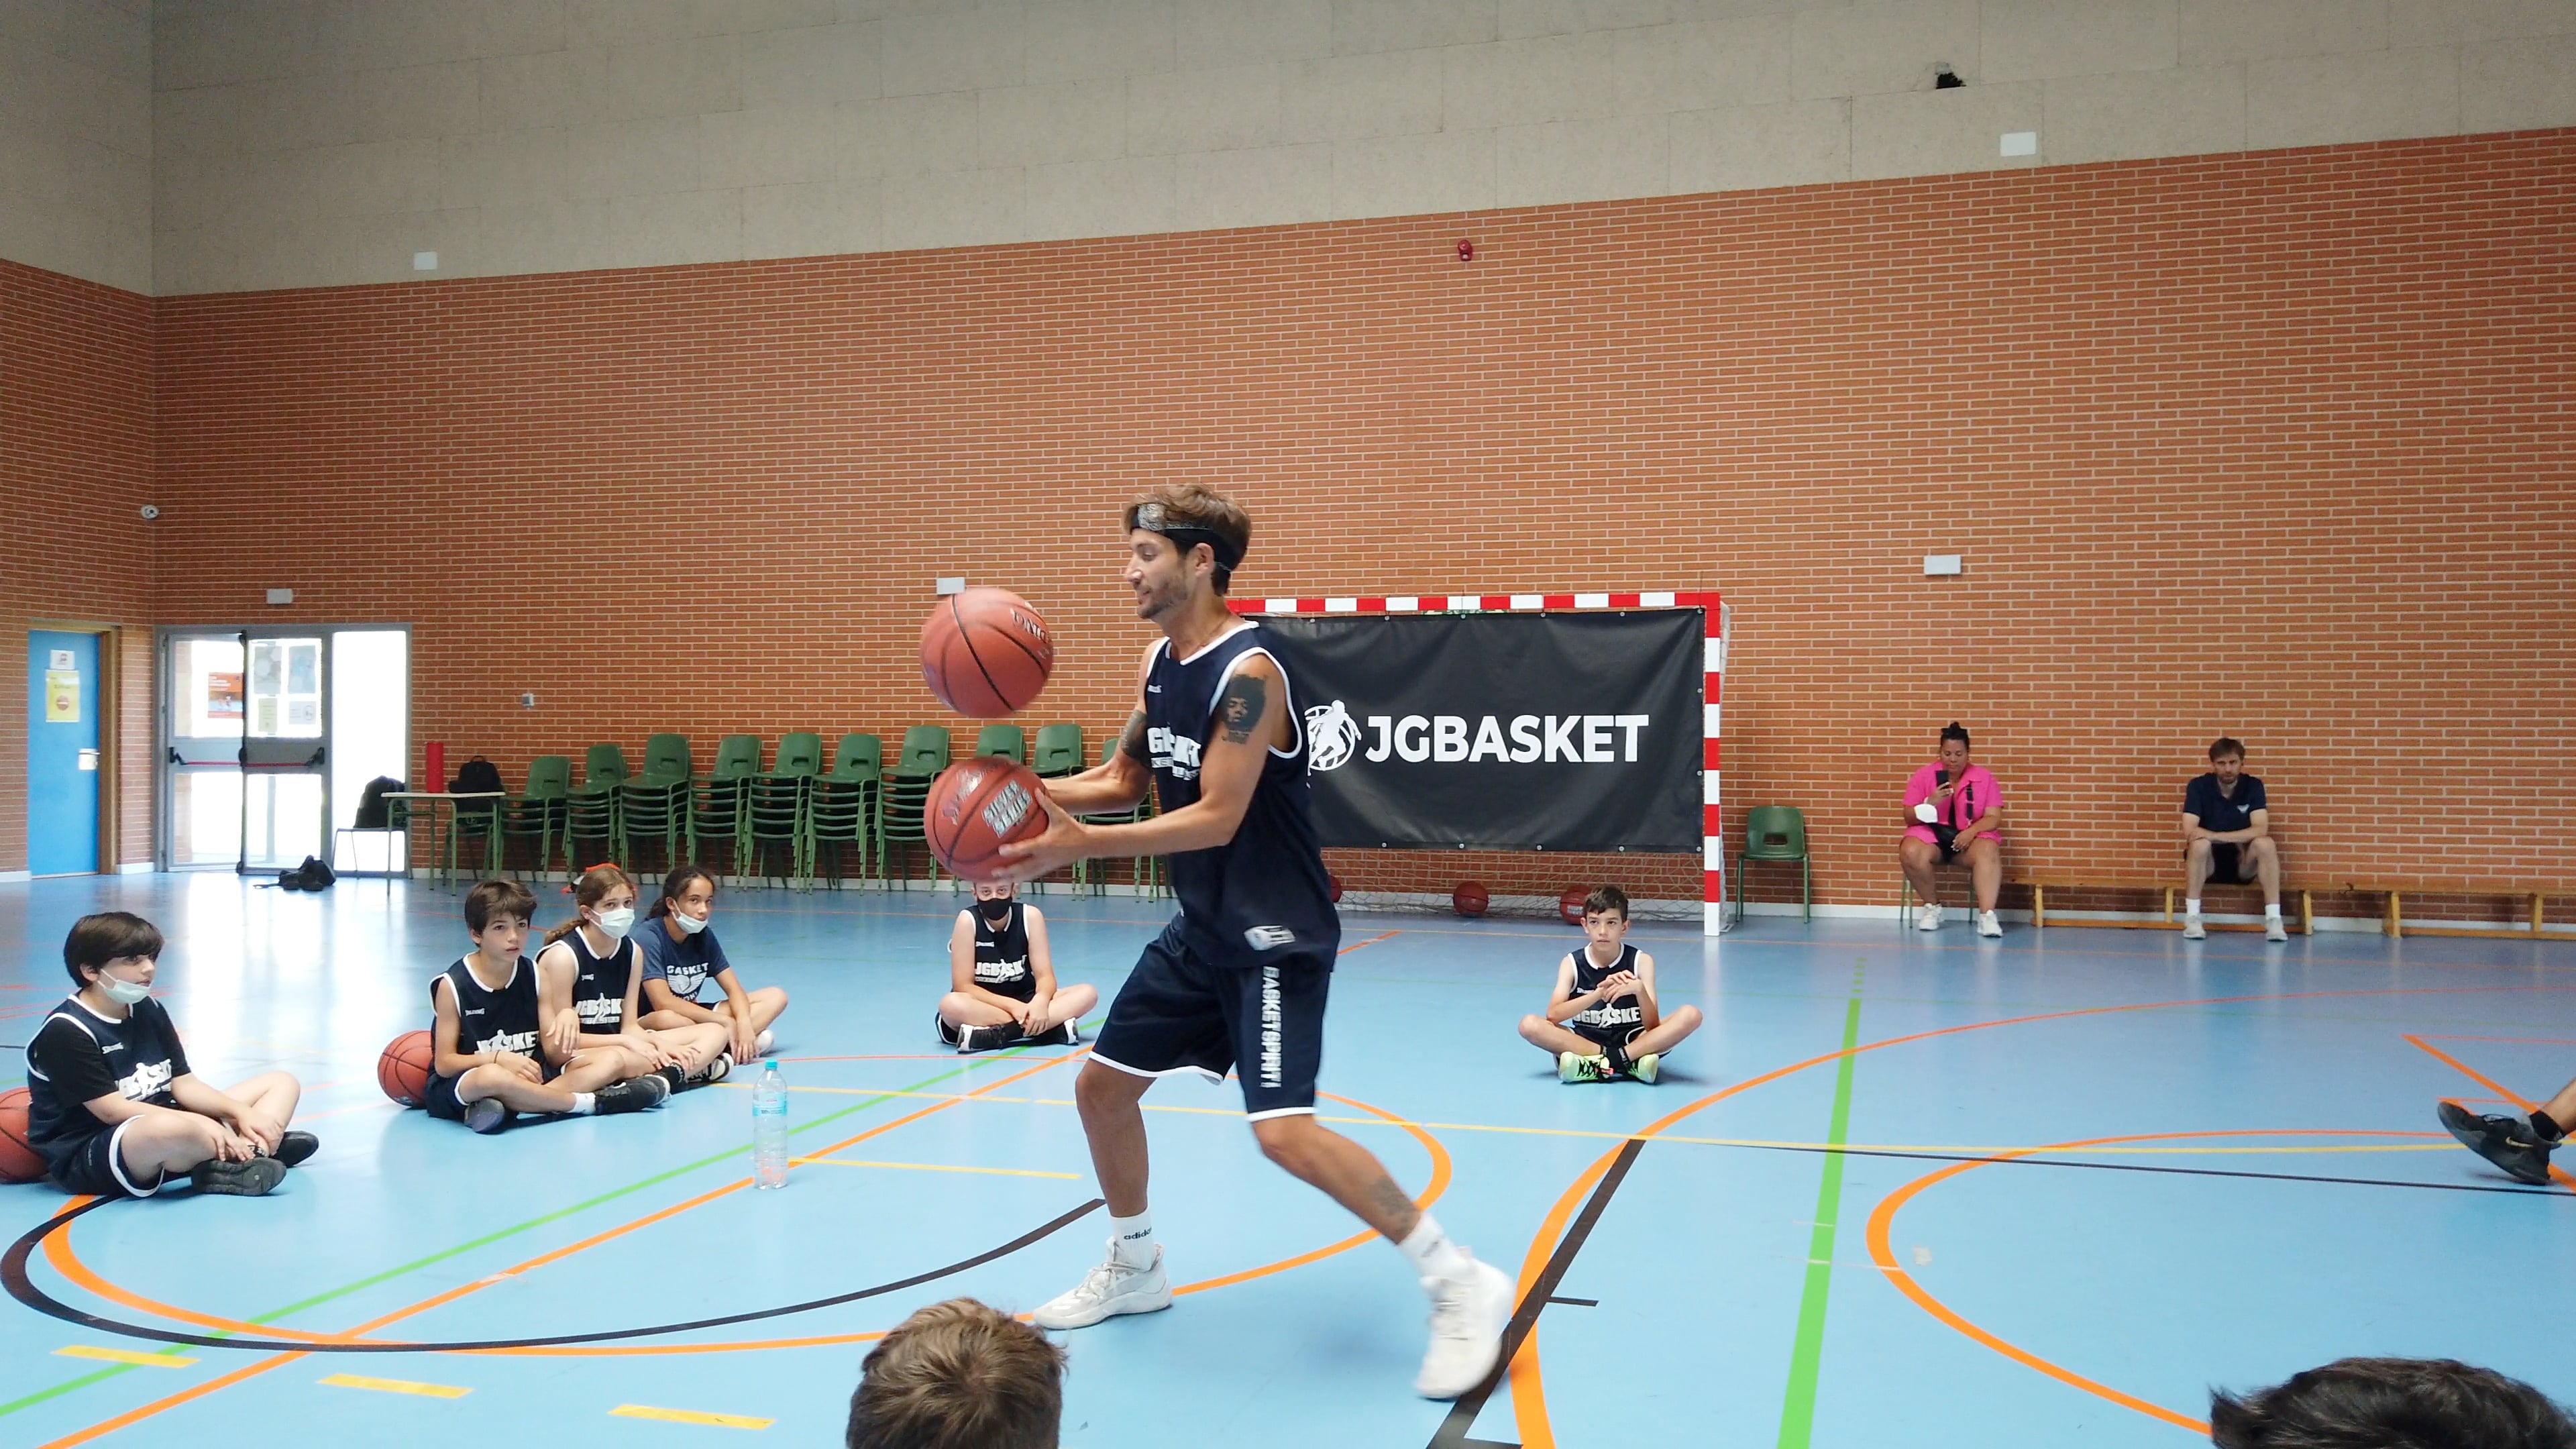 Exhibición freestyle baloncesto. Carlos Ceacero. Campus JGBasket on Vimeo